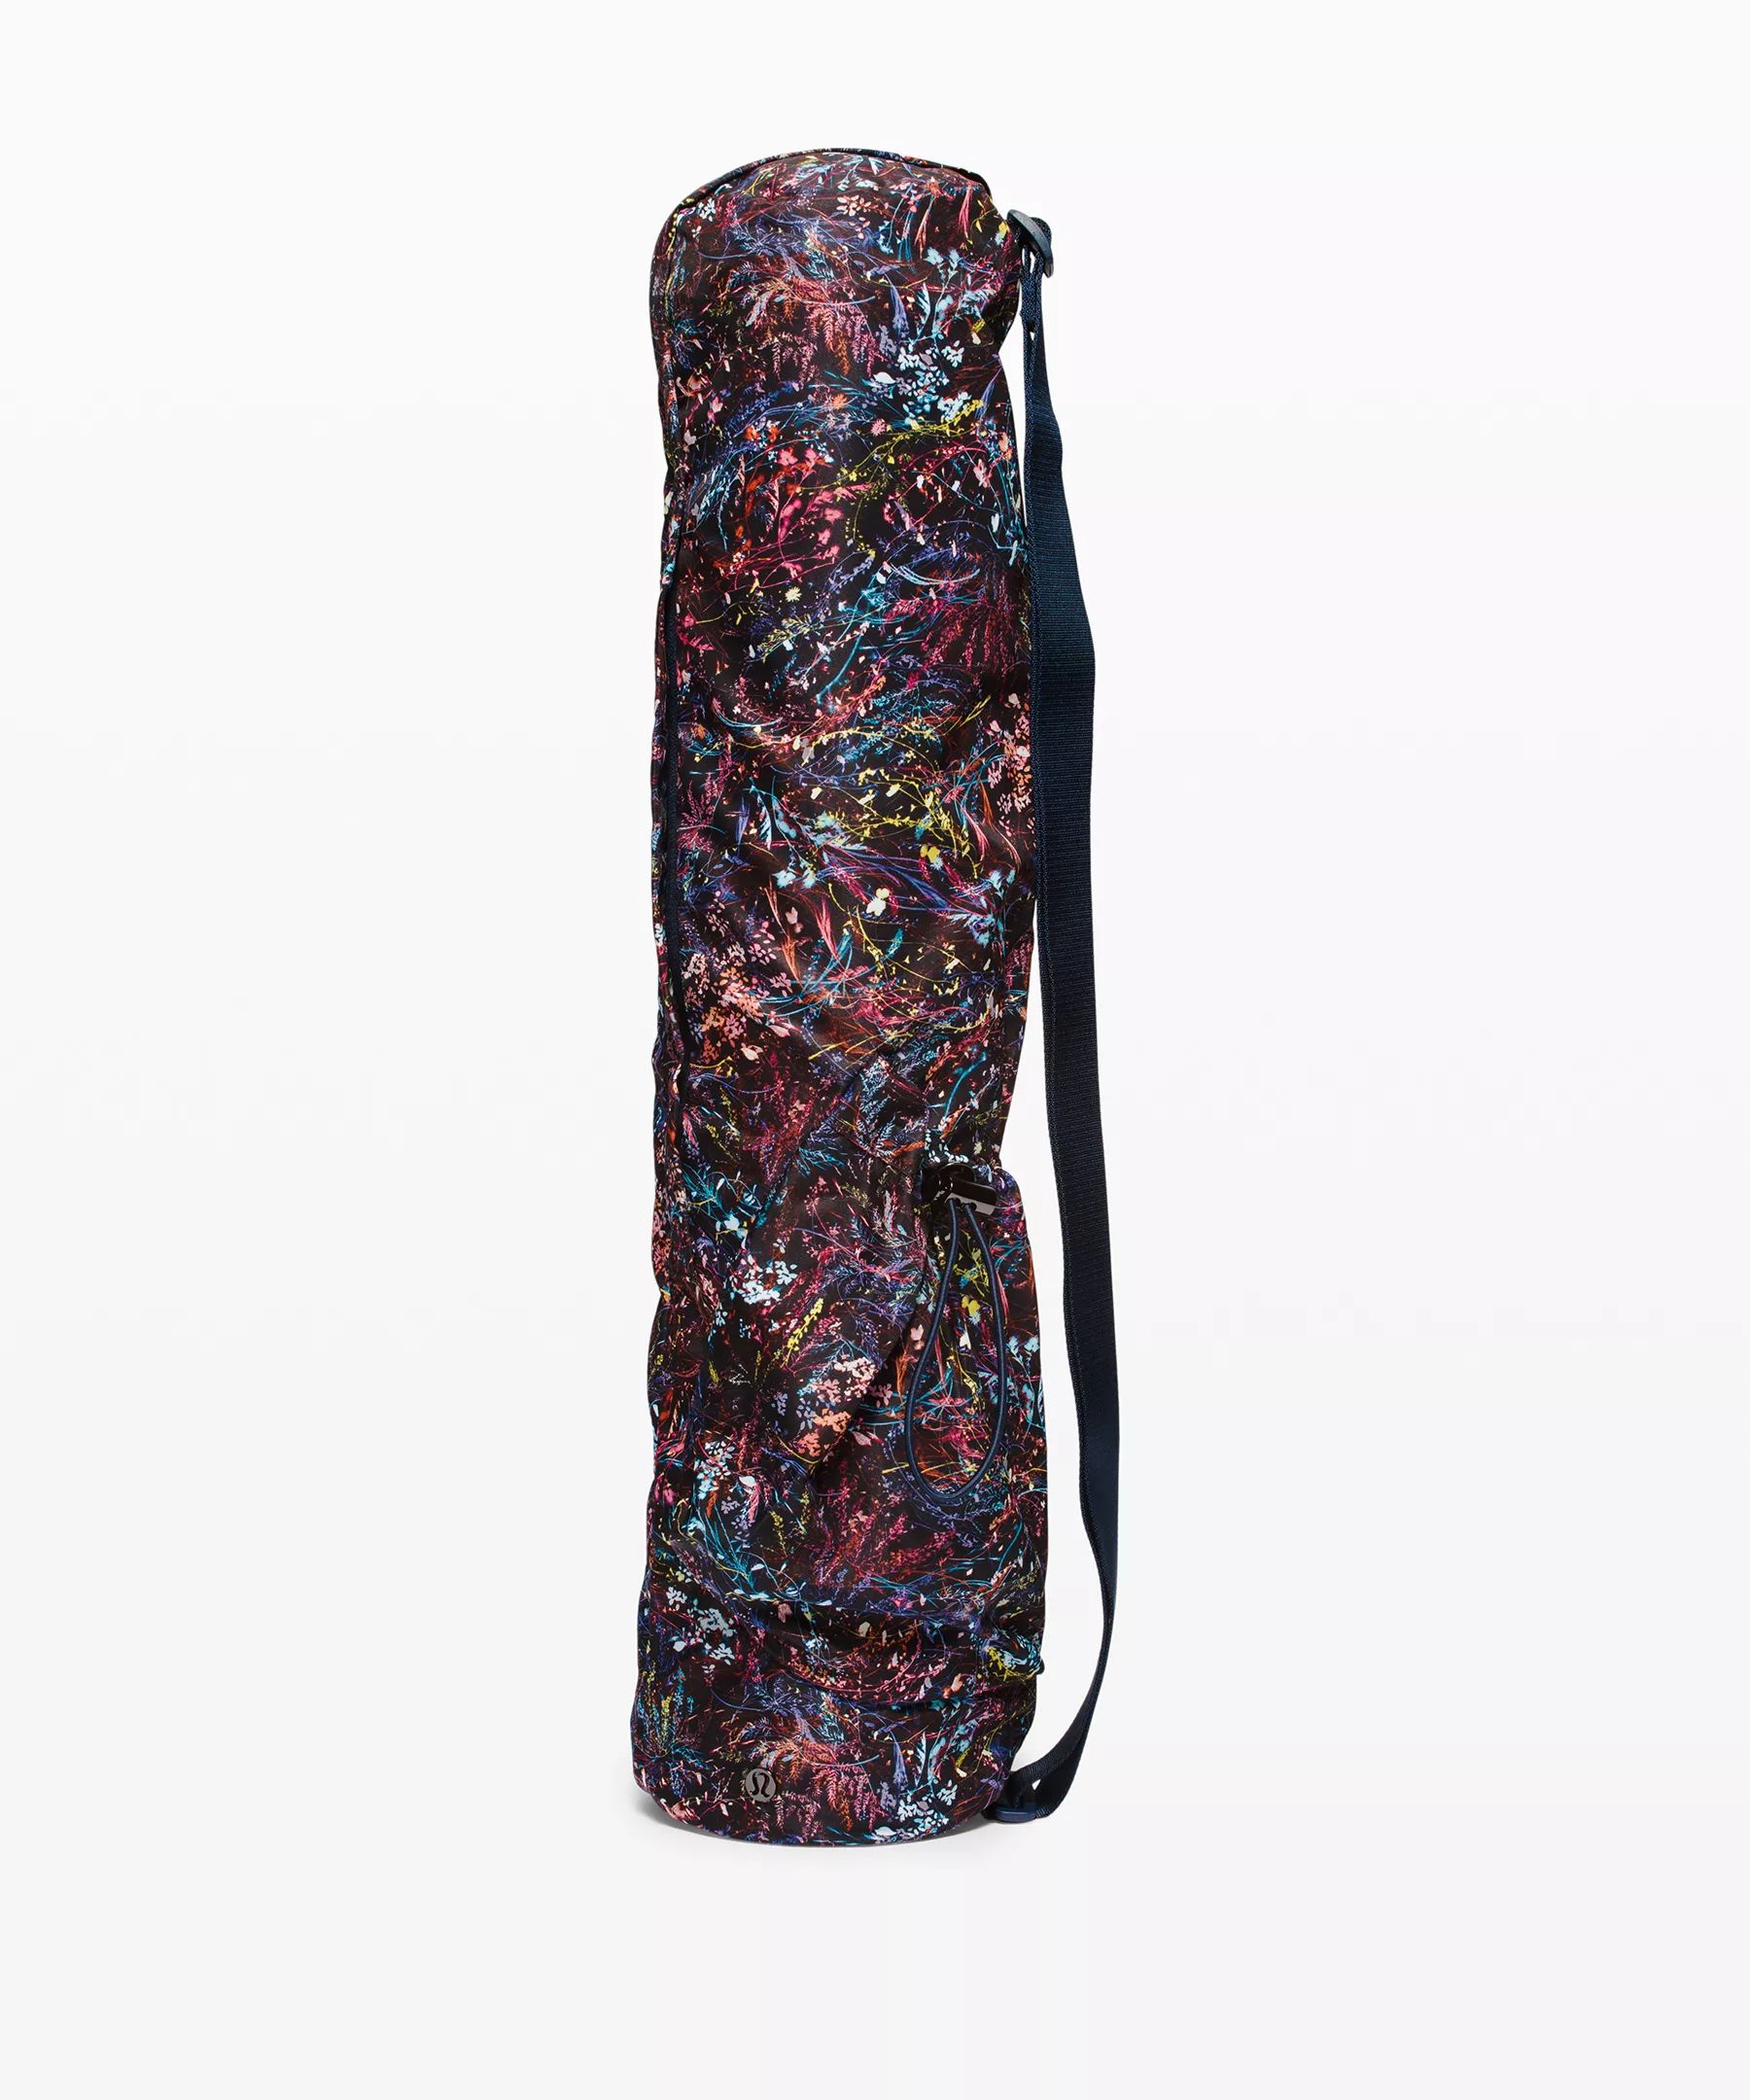 The Yoga Mat Bag *16L | Women's Bags | lululemon | Lululemon (US)